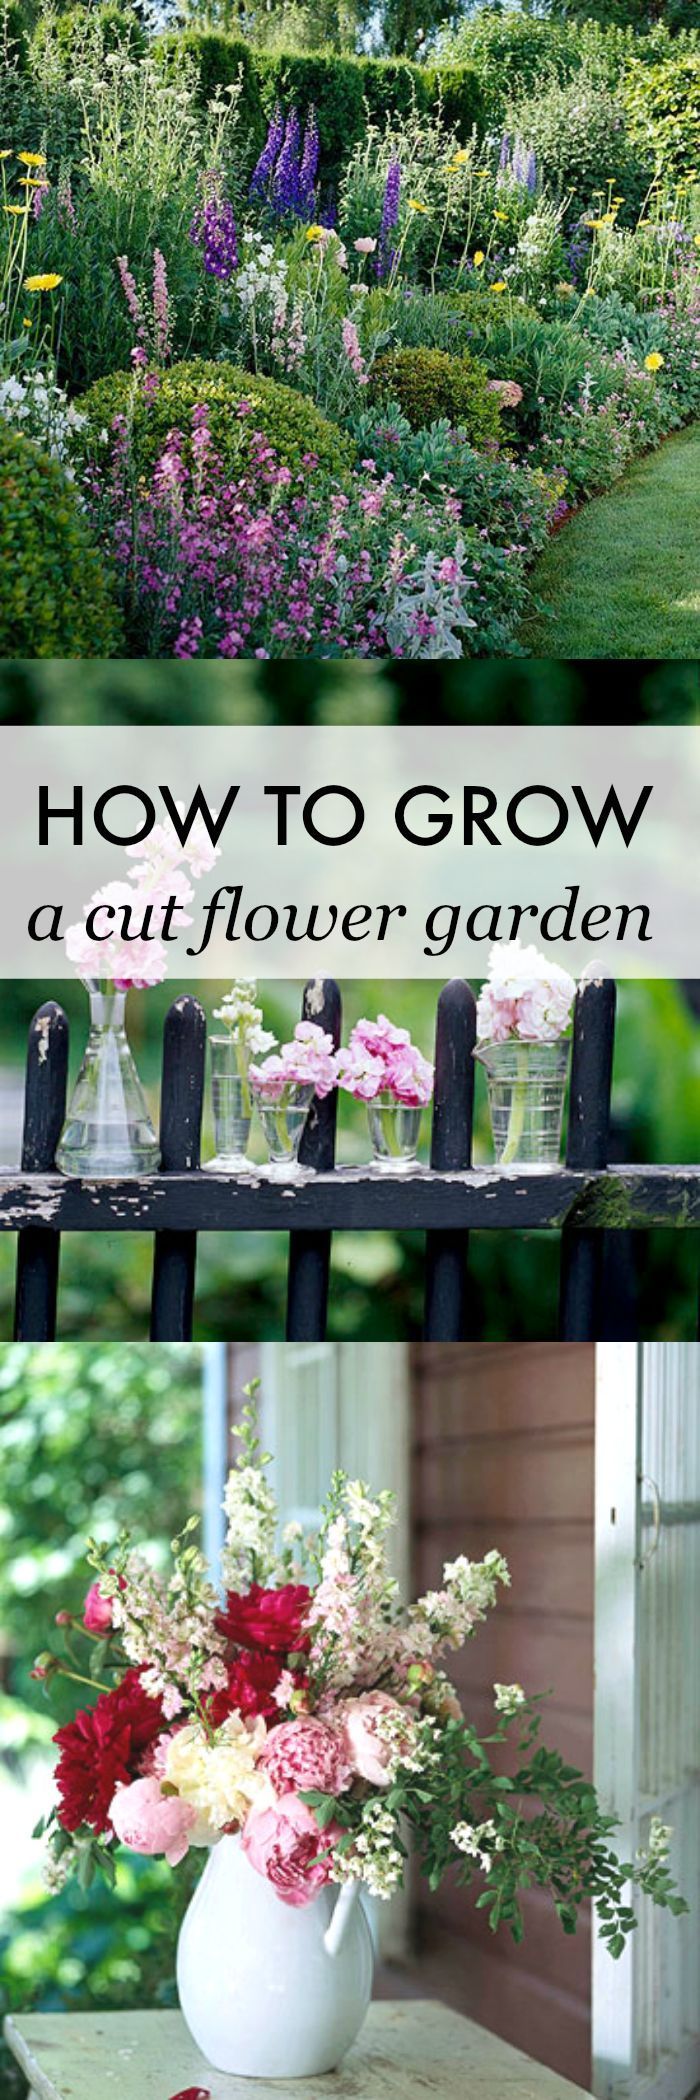 How To Grow A Cut Flower Garden